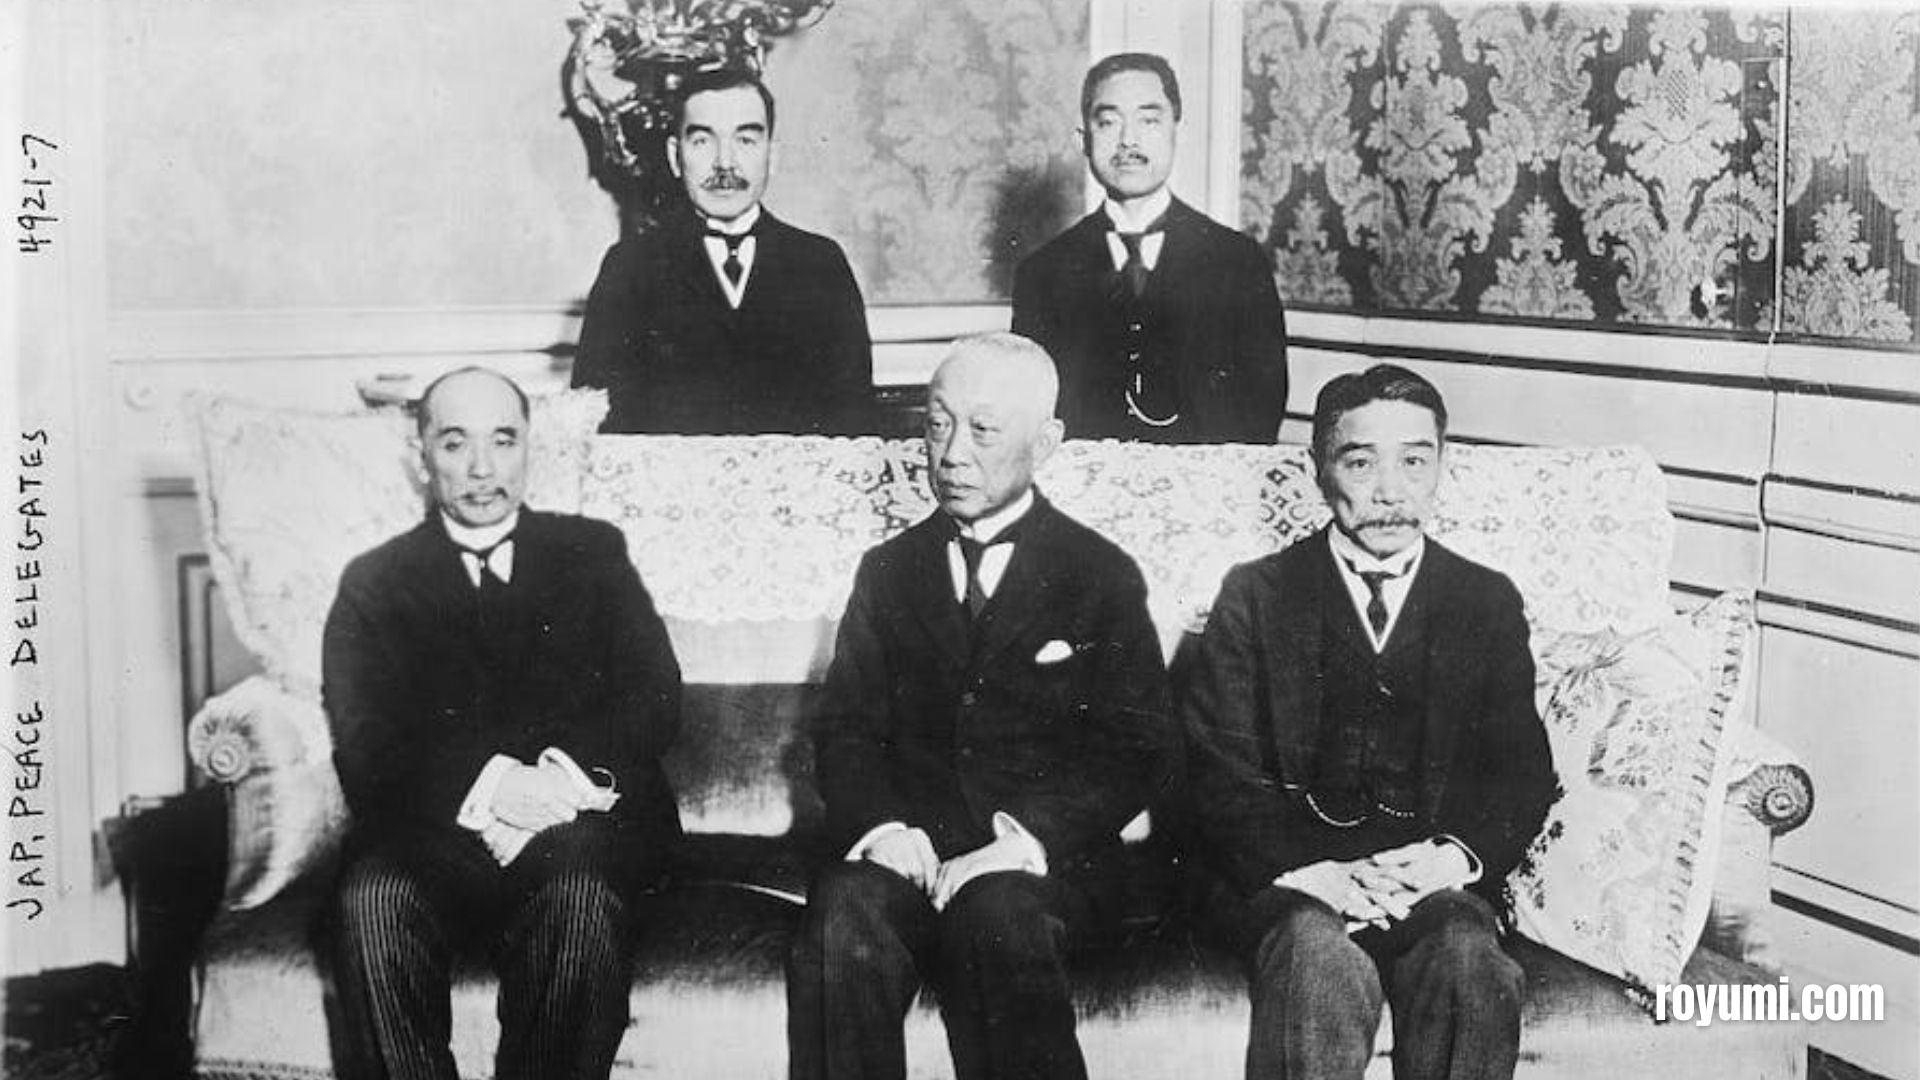 すべての人の平等に向けた日本の提案：なぜ一部の国が反対したのか？